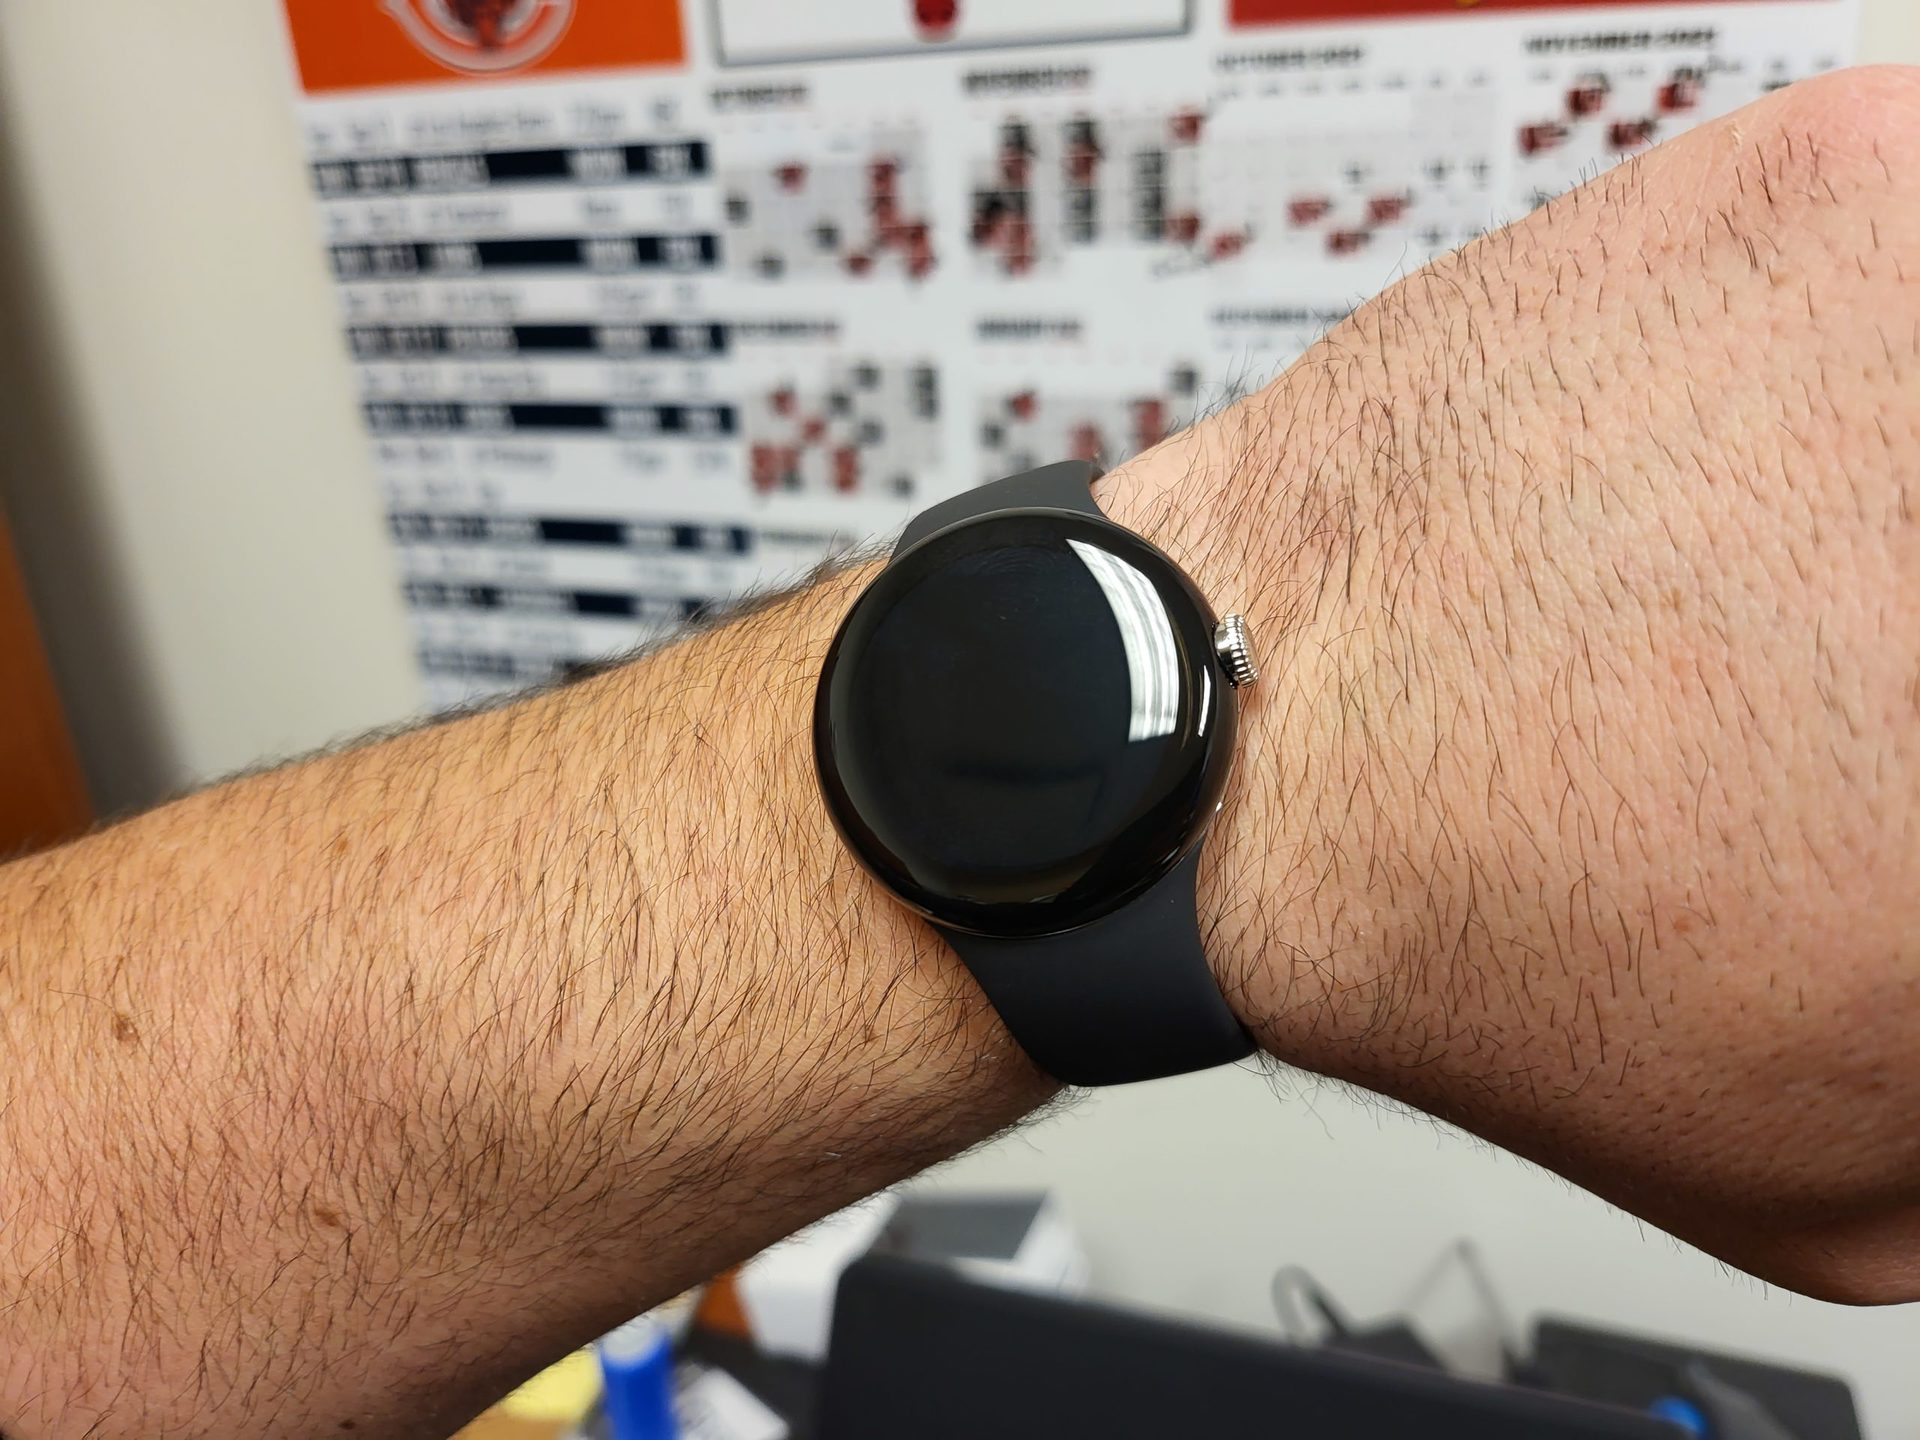 Prototaip jam tangan piksel pada pergelangan tangan 7